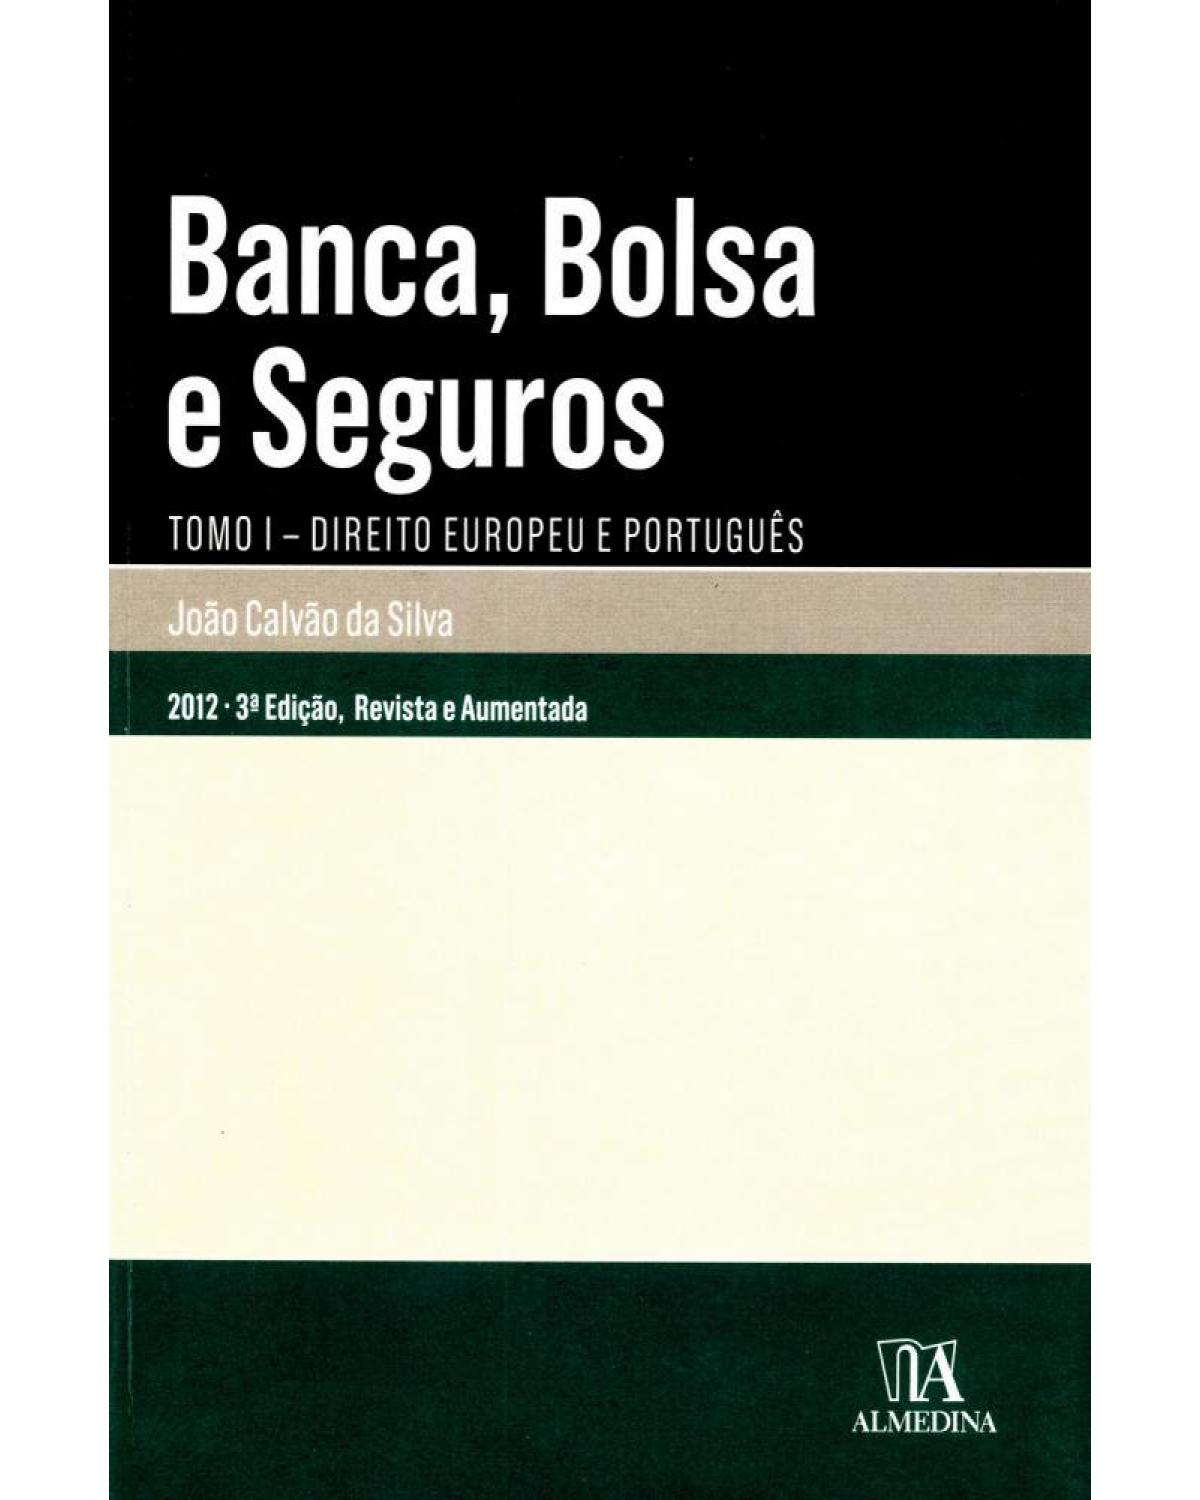 Banca, bolsa e seguros - tomo I: Direito europeu e português - 3ª Edição | 2012